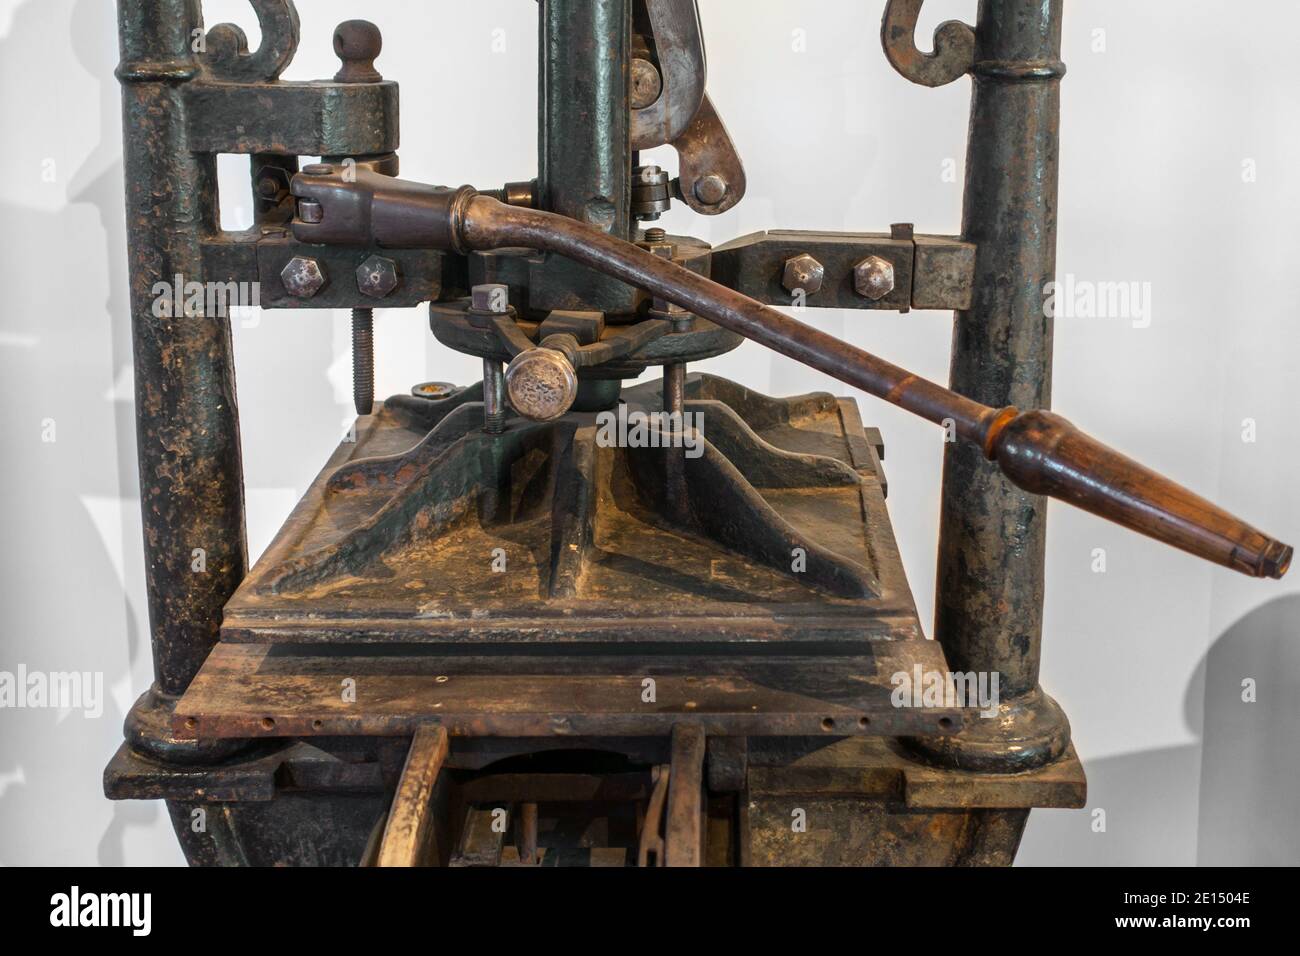 Presse Albion du XIXe siècle, presse à imprimer à la main en fer utilisée pour l'impression commerciale de livres réalisée par le fabricant de Bruxelles Mathieu Banque D'Images